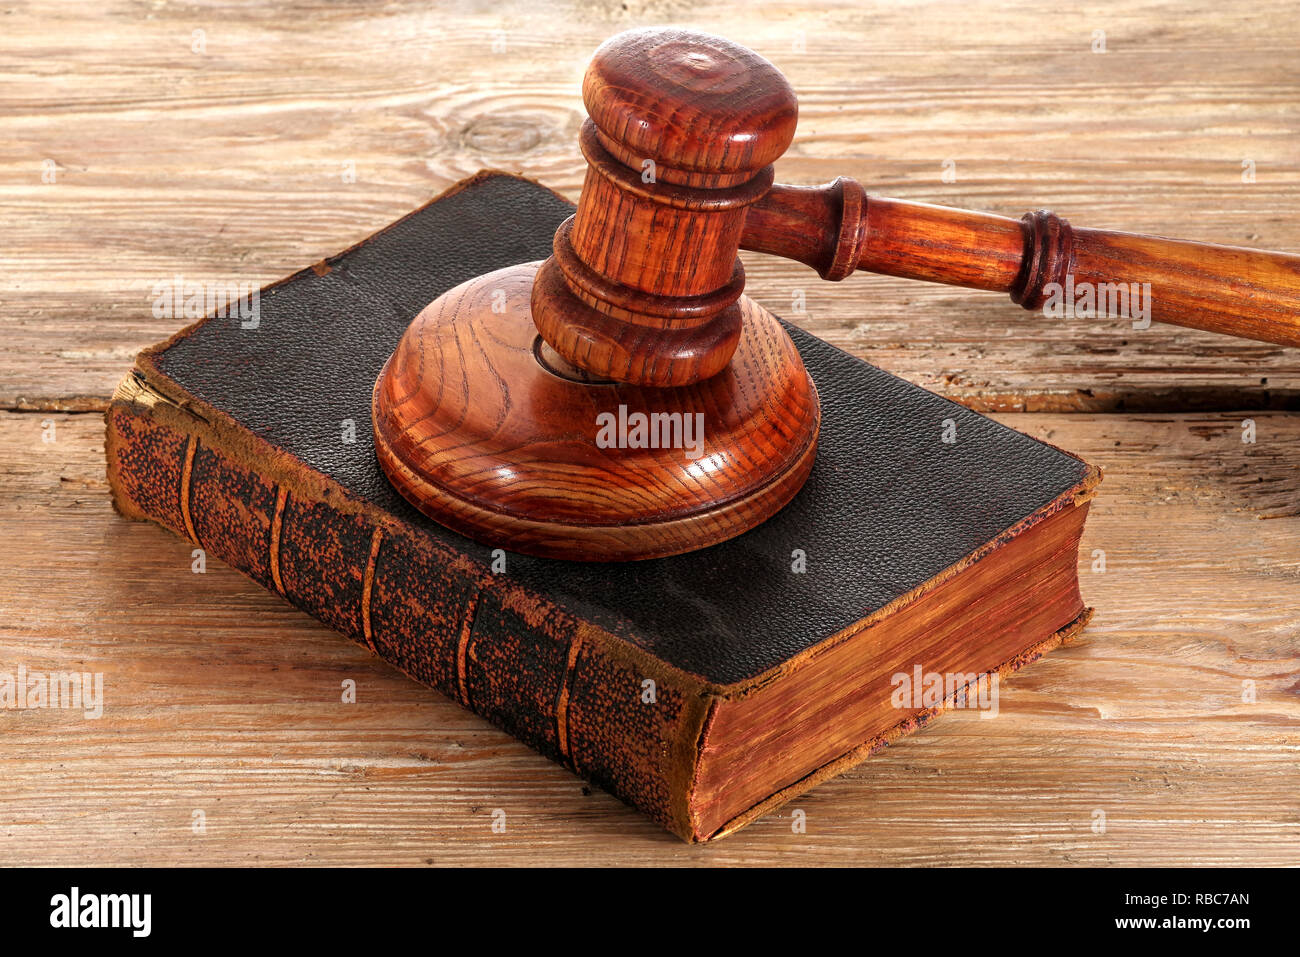 Marteau ou maillet de juge droit sur un bureau en bois Banque D'Images